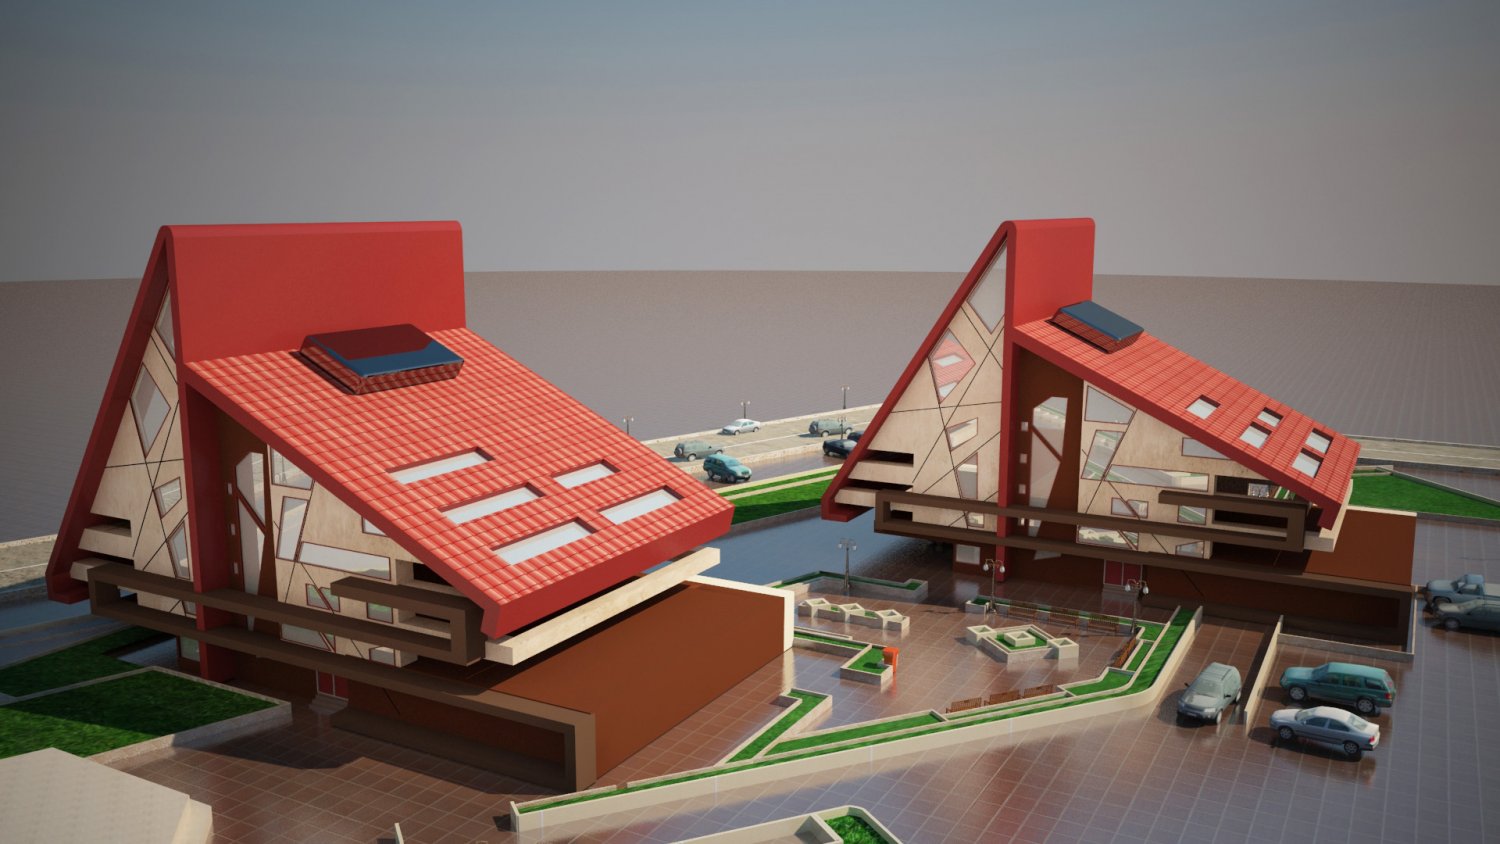 Model Of Red Design Building